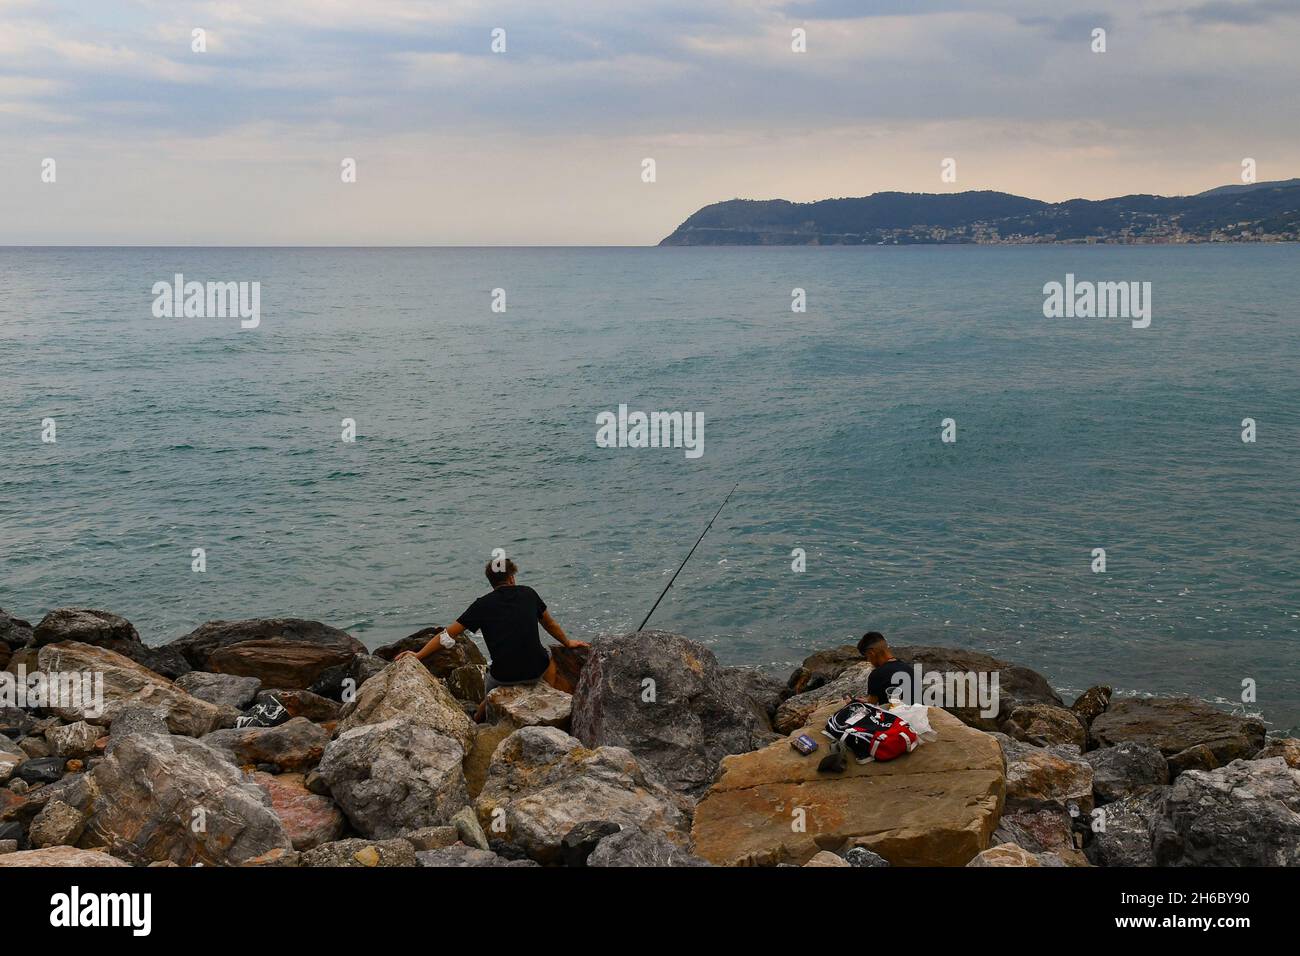 Deux garçons pêchant à partir de la mer rocheuse avec le promontoire de Capo Mele au-dessus de l'horizon de la mer par une journée nuageux, Alassio, Savona, Ligurie, Italie Banque D'Images